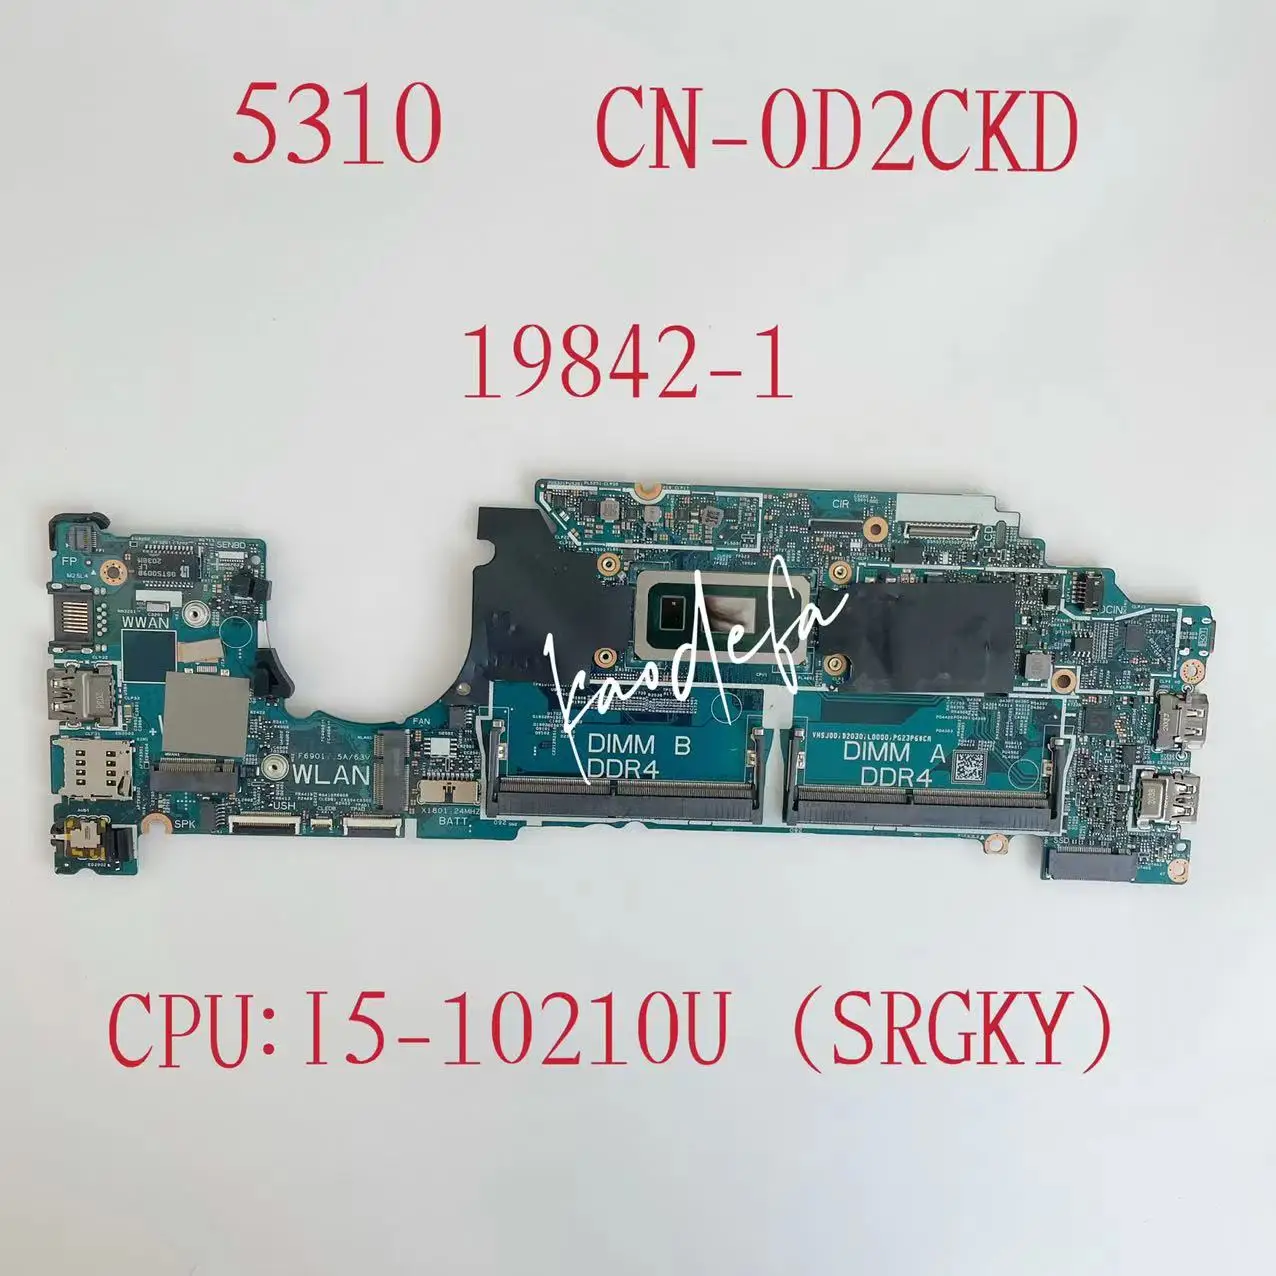 

CN-0D2CKD 0D2CKD D2CKD 19842-1 Mainboard For Dell Latitude 5310 Laptop Motherboard CPU:I5-10210U SRGKY DDR4 Test OK